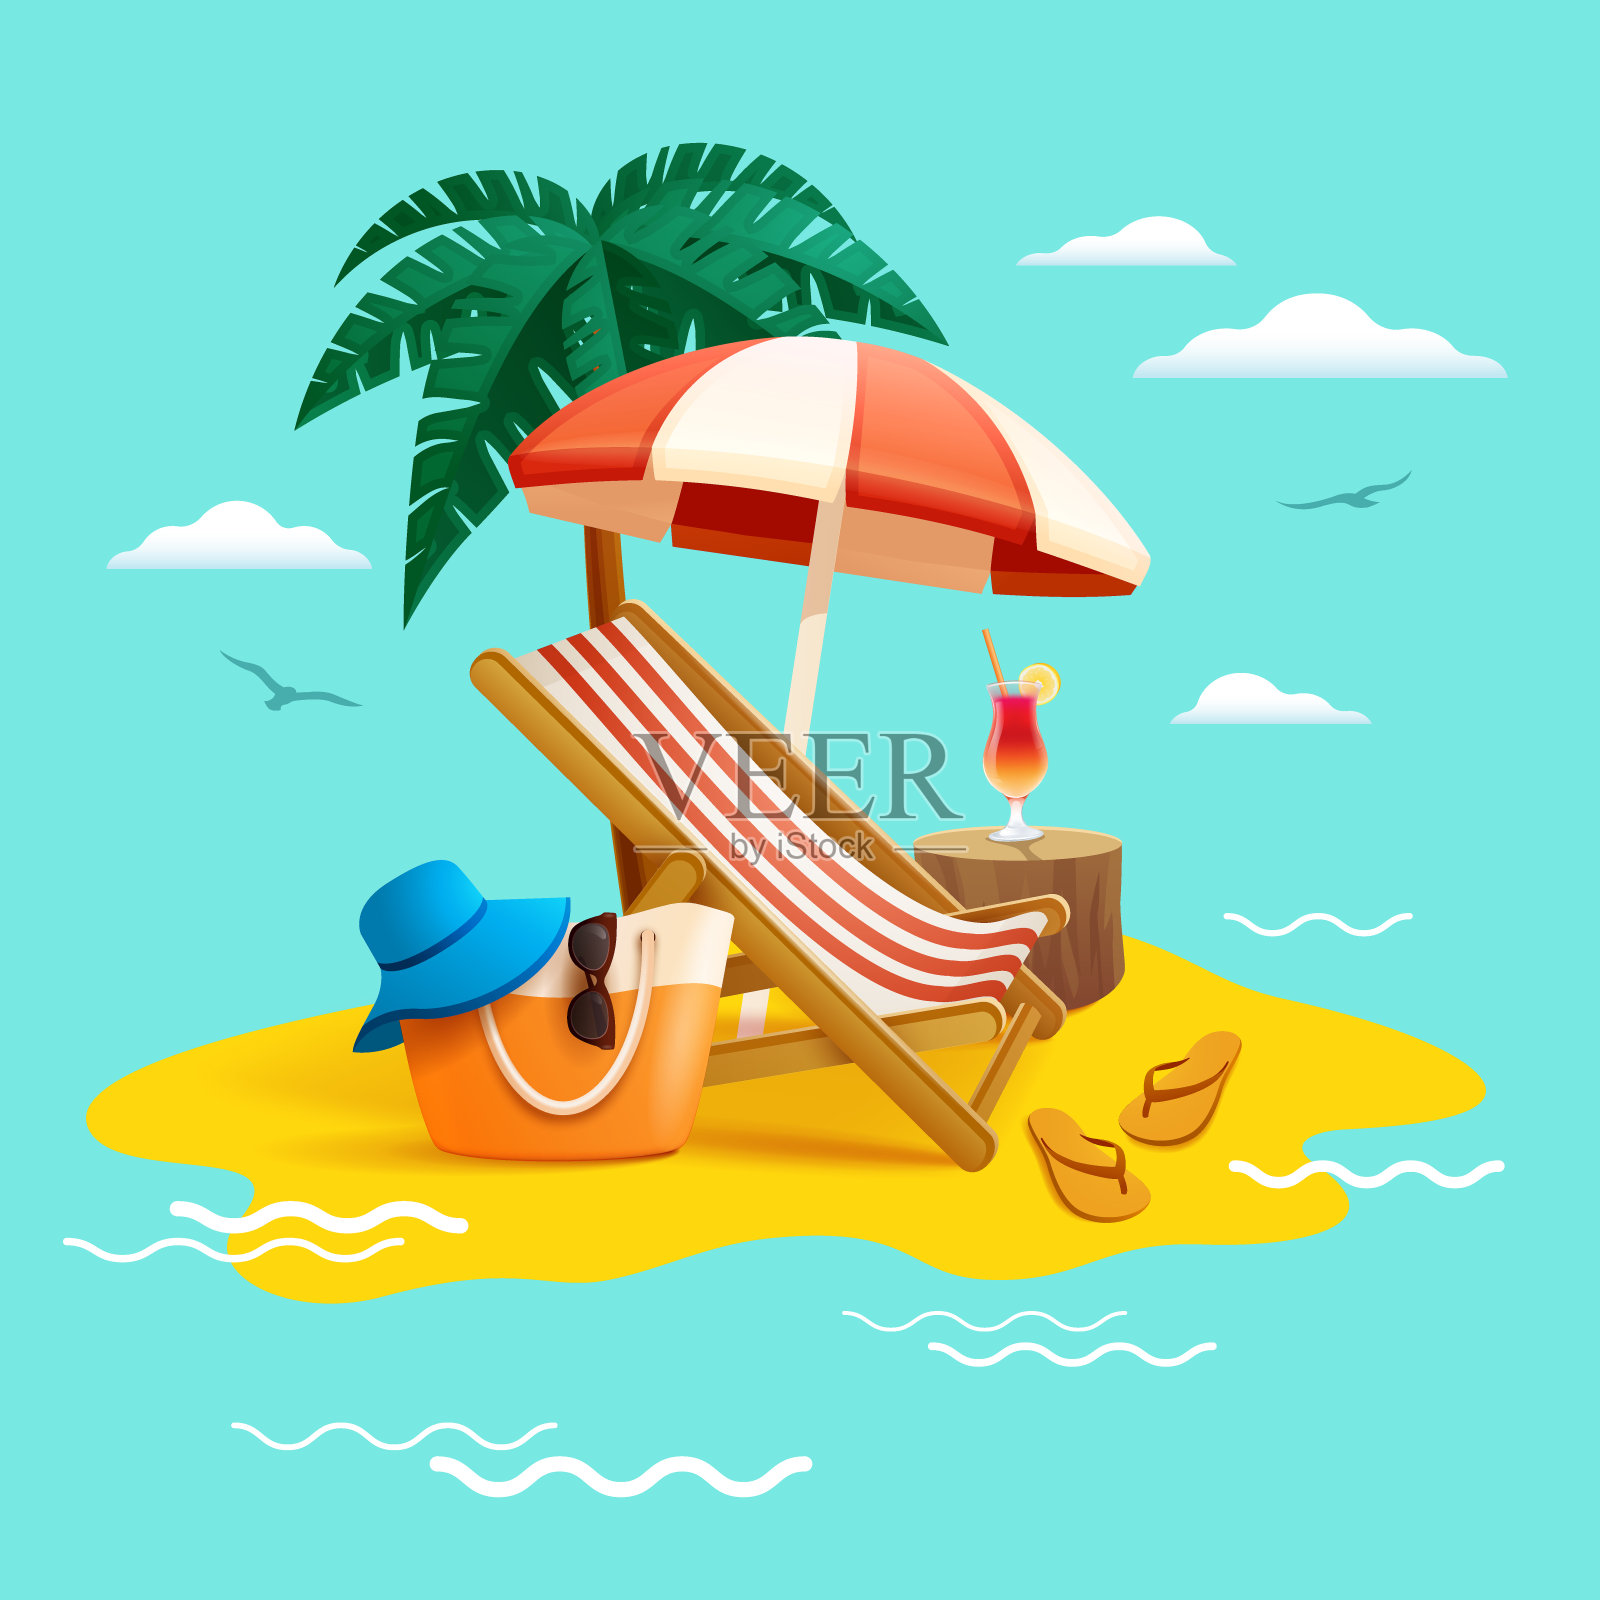 暑假去海滩度假。沙滩椅、沙滩伞、椰子树、沙滩包帽、沙滩人字拖。插画图片素材